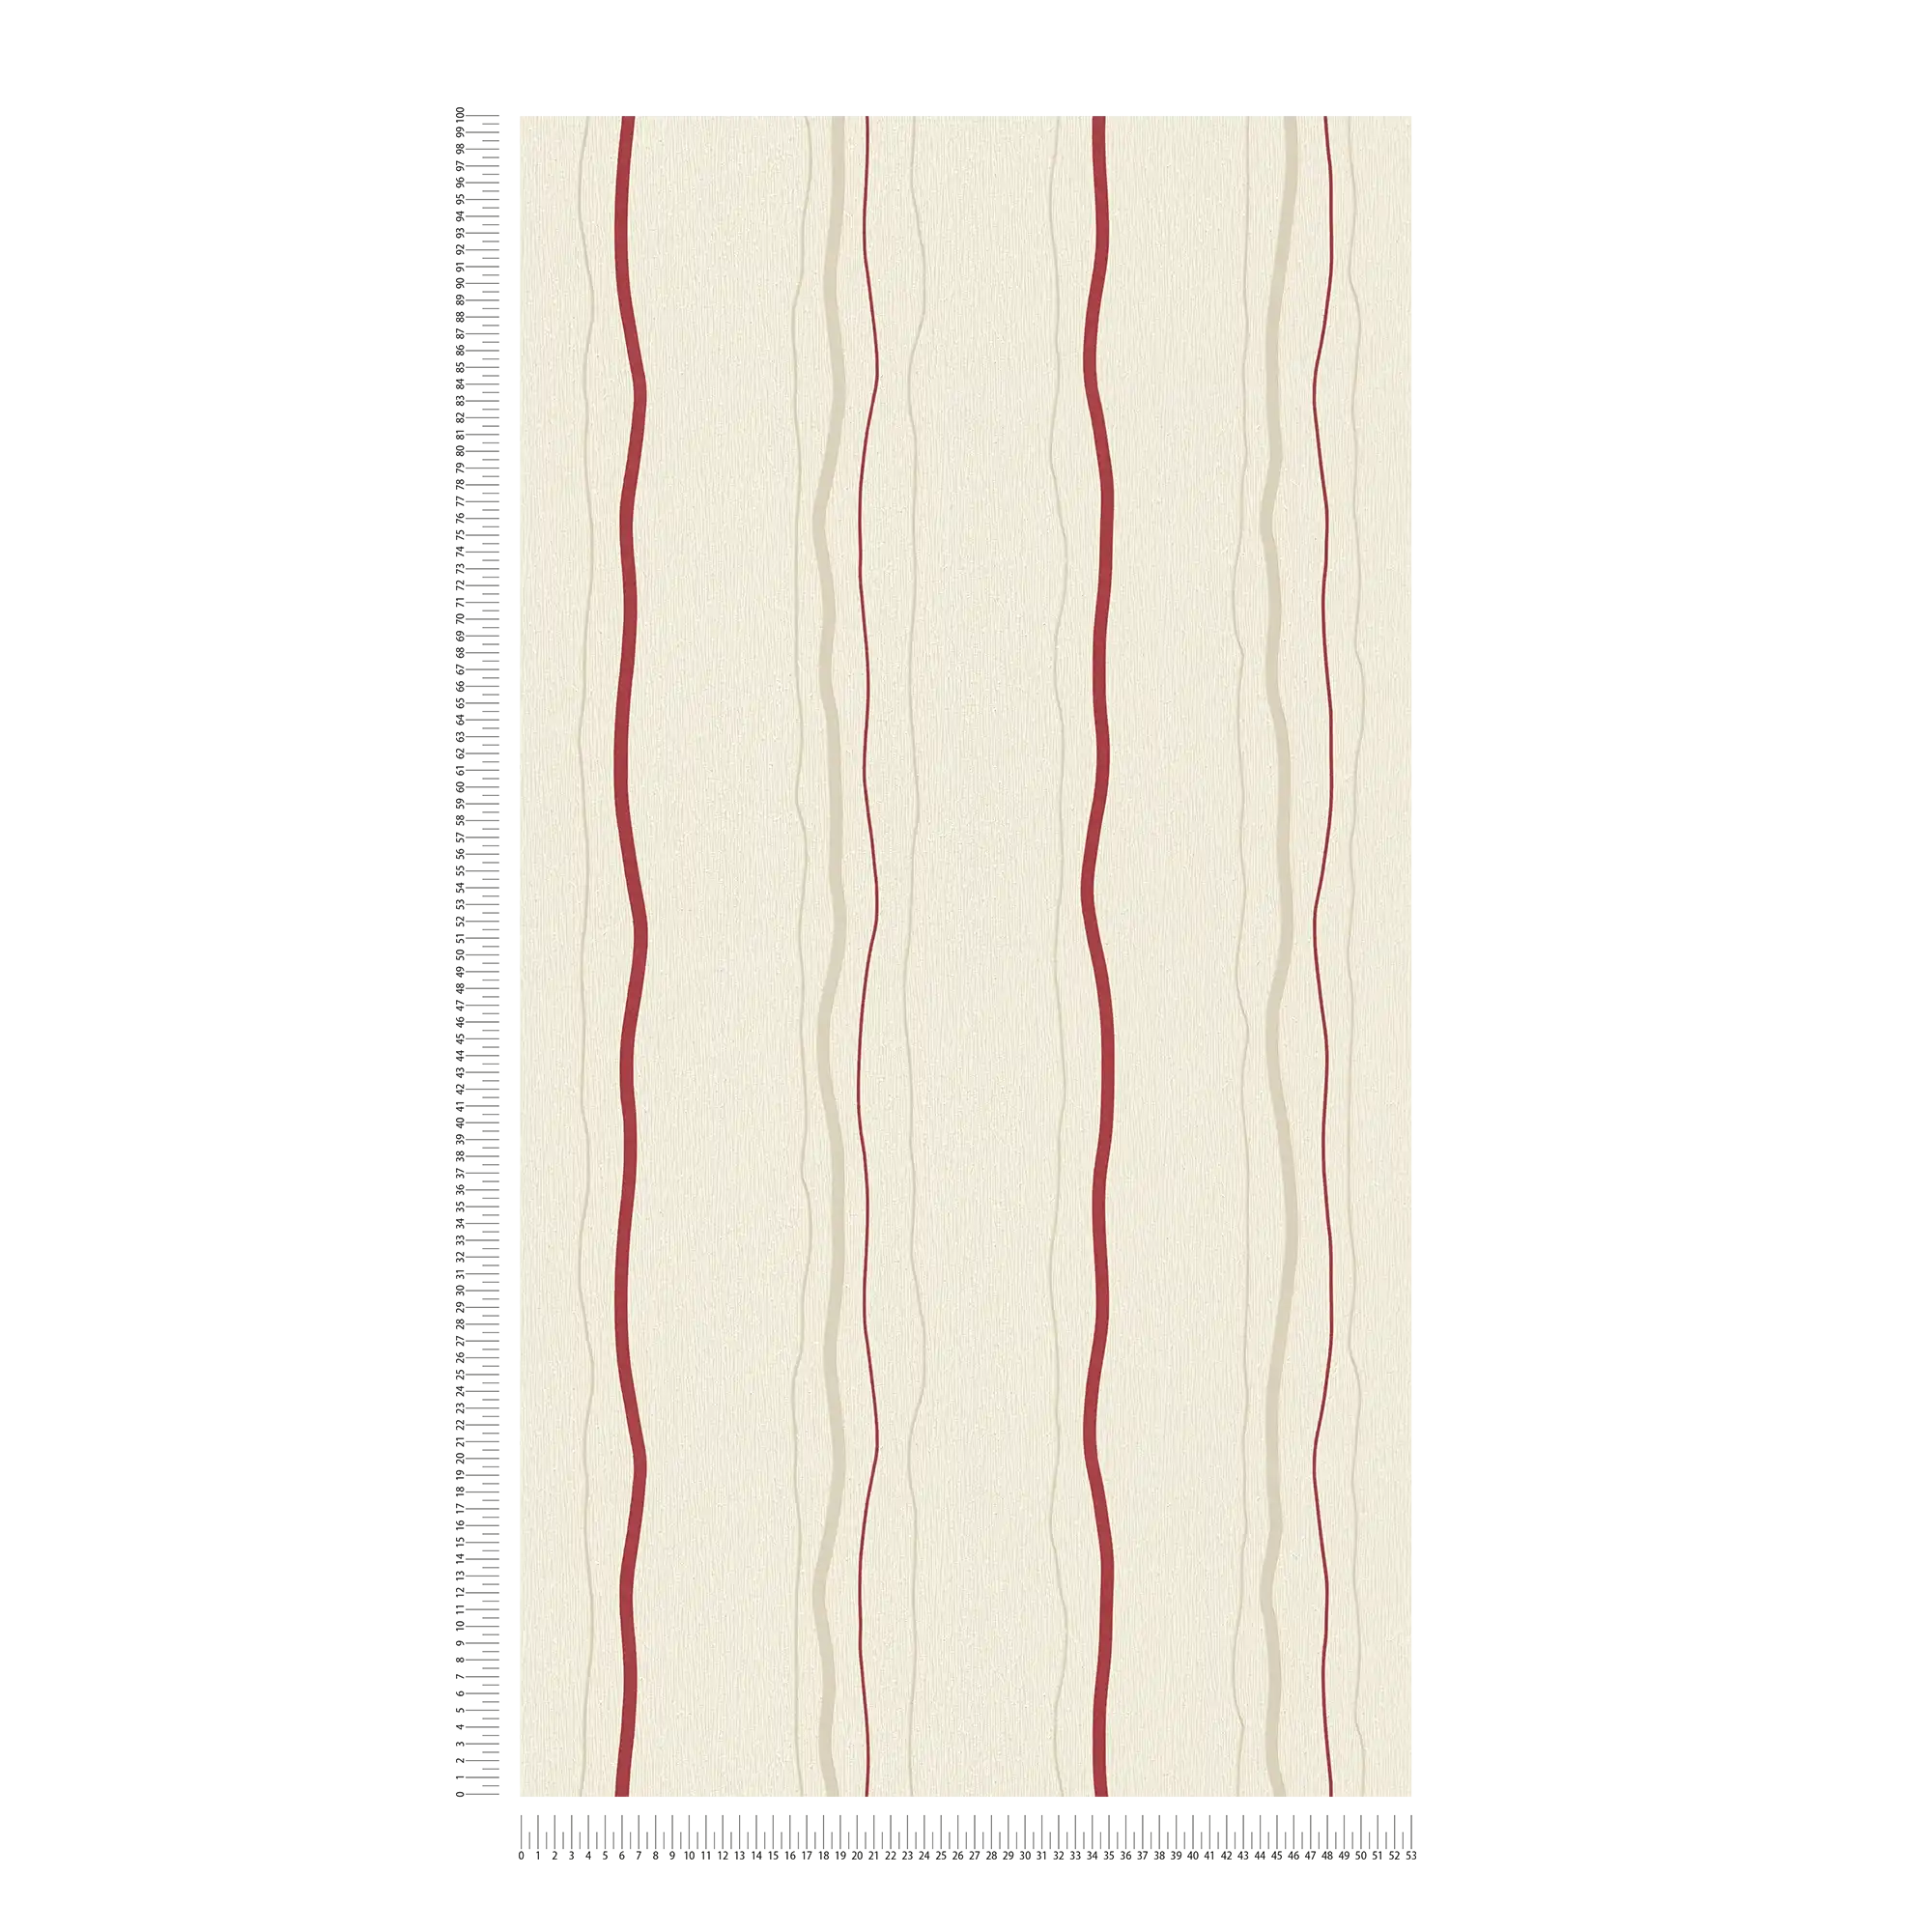             Carta da parati con motivo a righe verticali - crema, rosso, beige
        